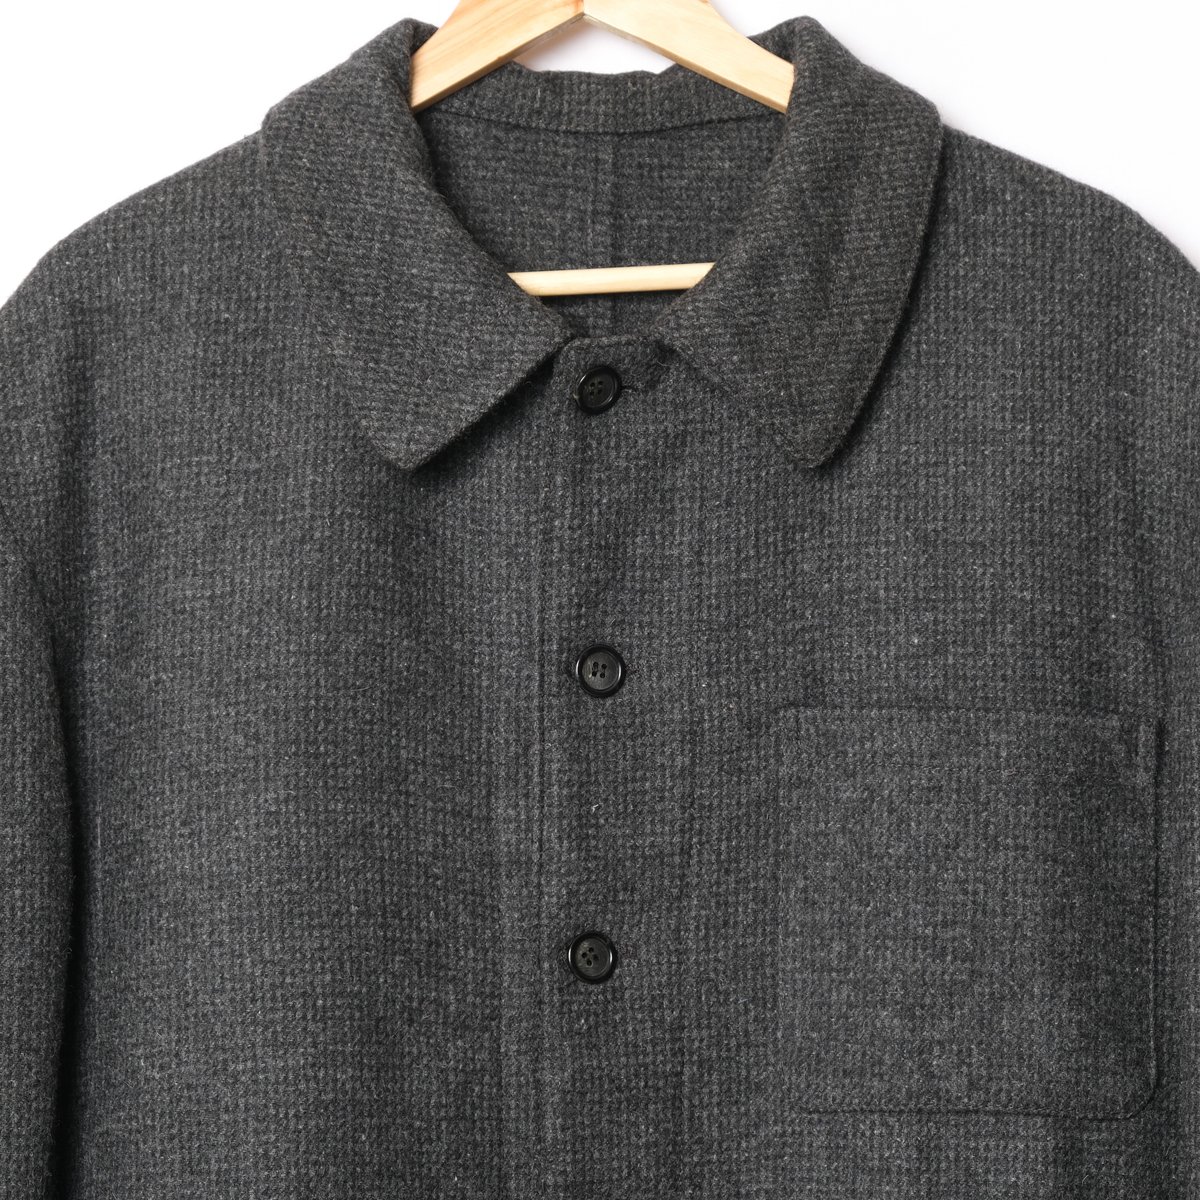 50-60s France Vintage Wool Farmers Work Jacket Size 52 Dead Stock